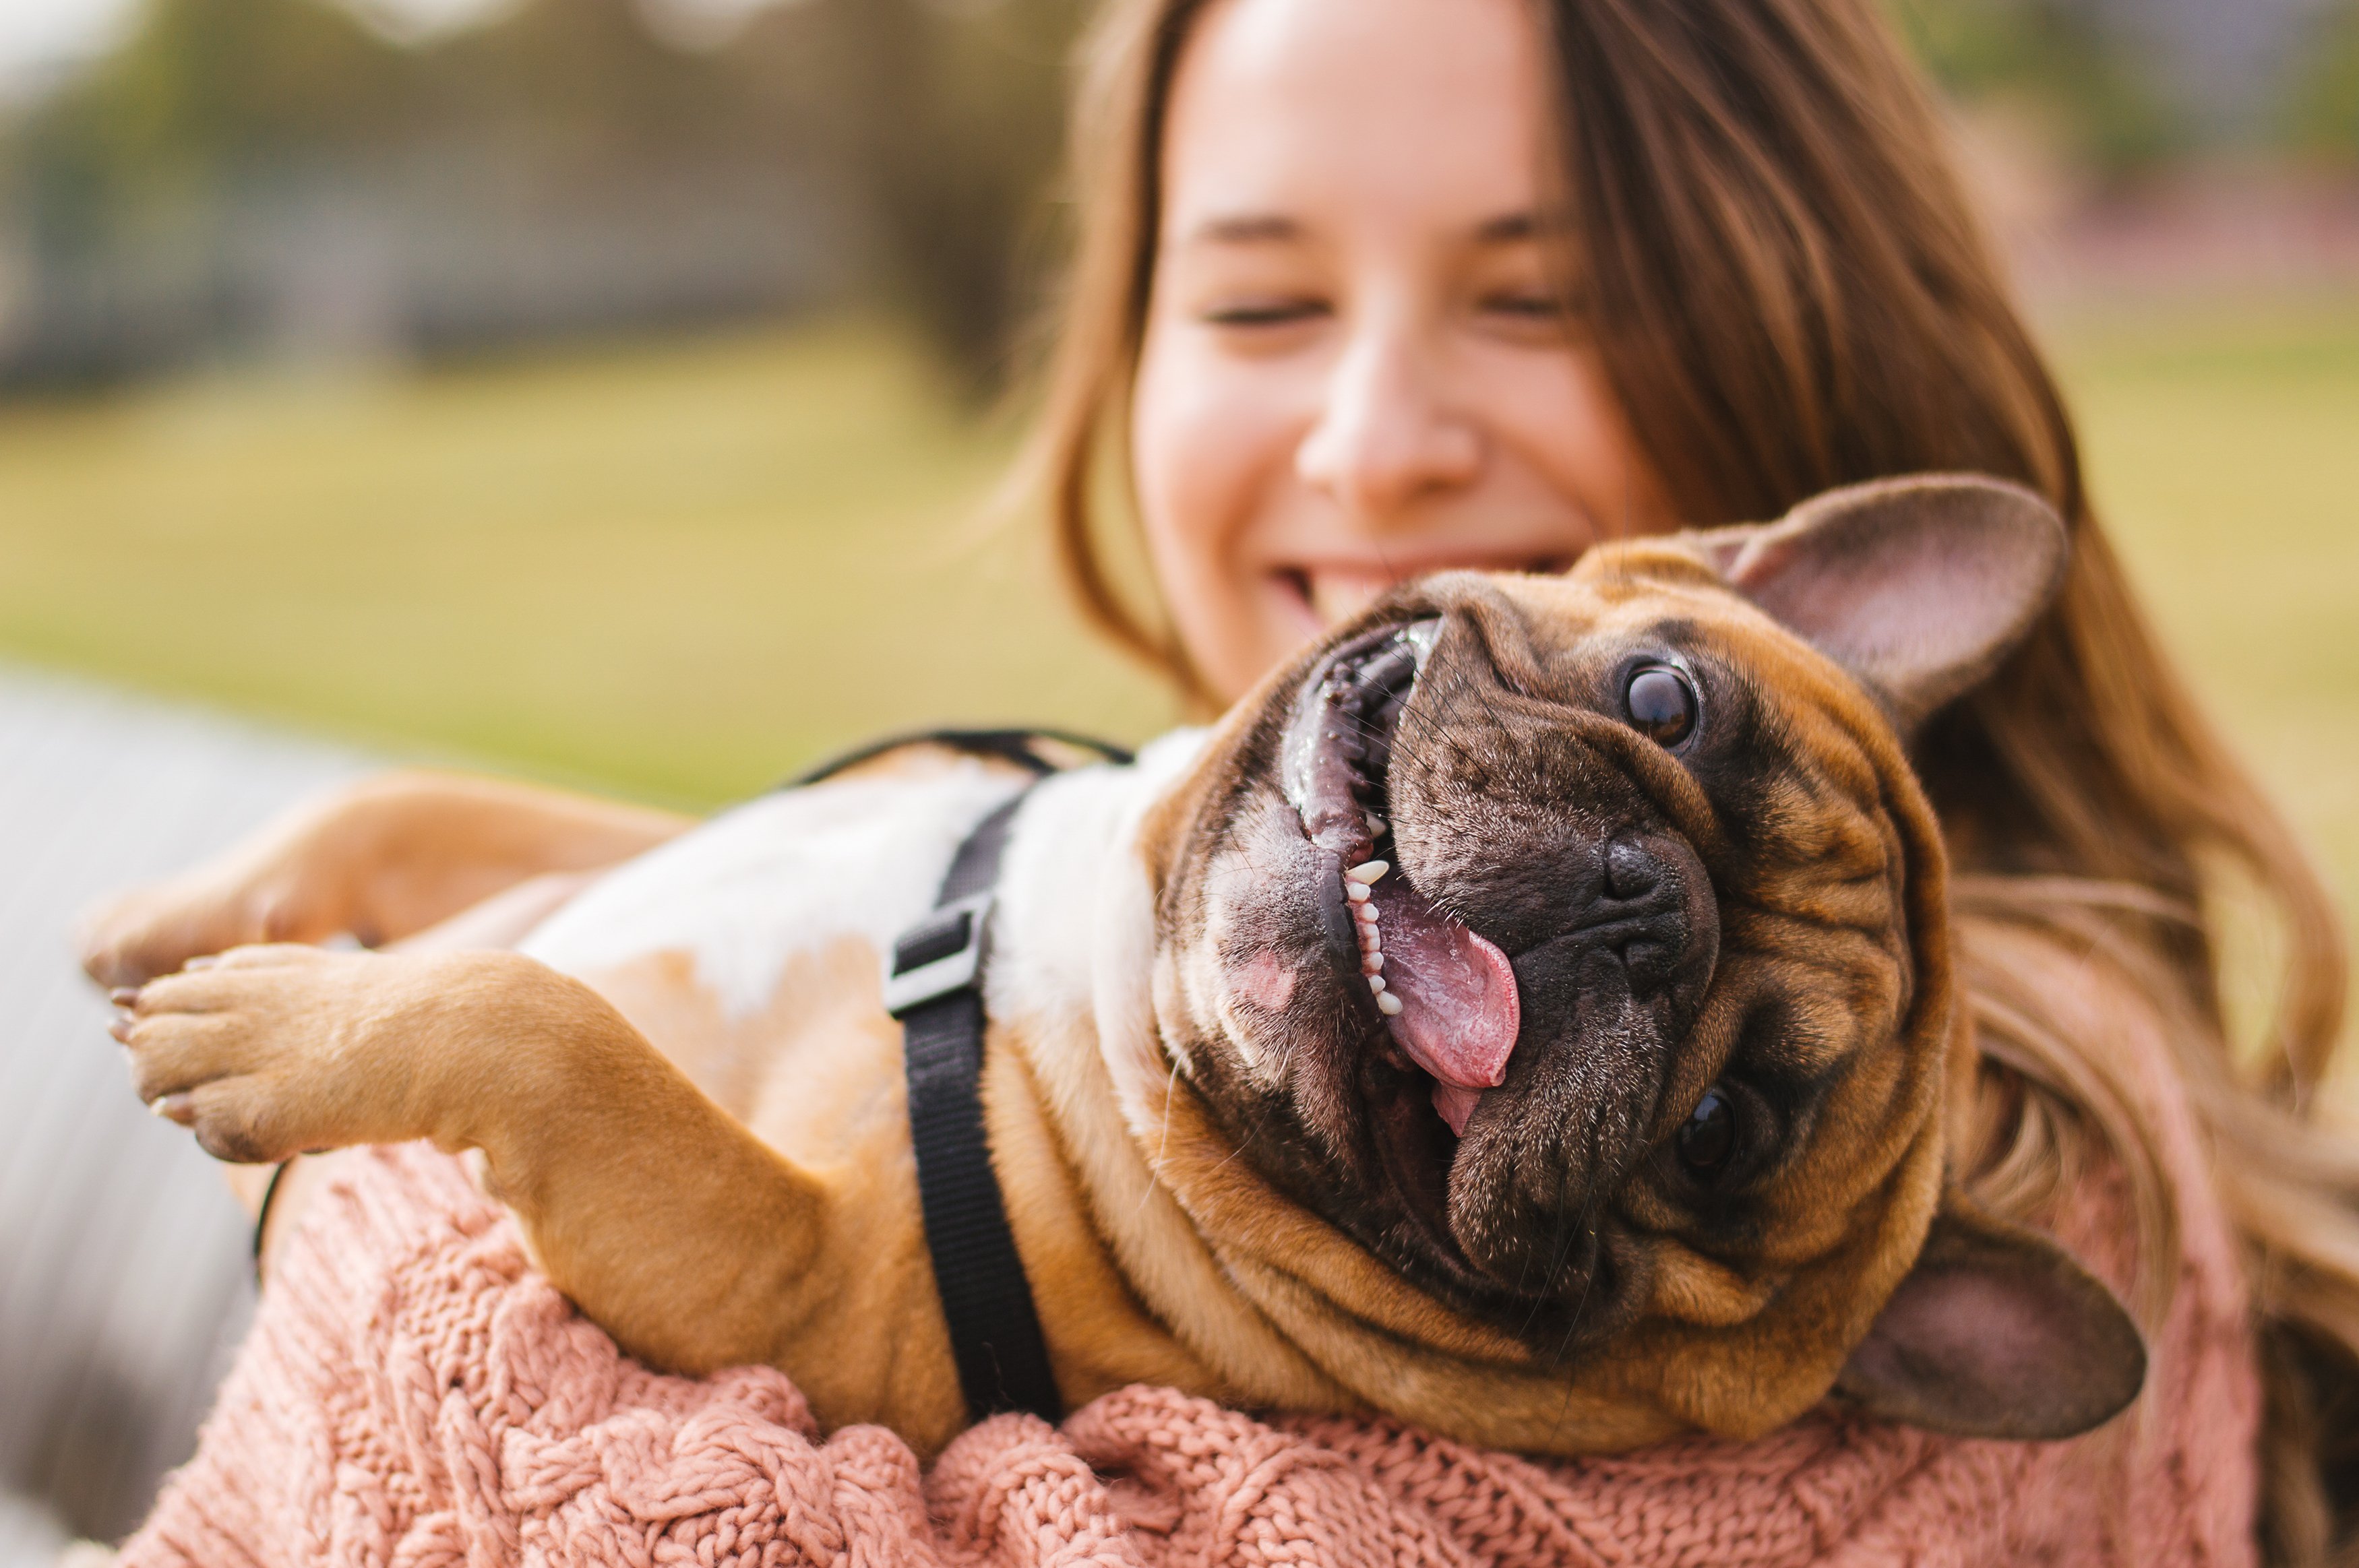 Kleiner Hund verbringt Zeit mit seinem Besitzerin | Quelle: Shutterstock